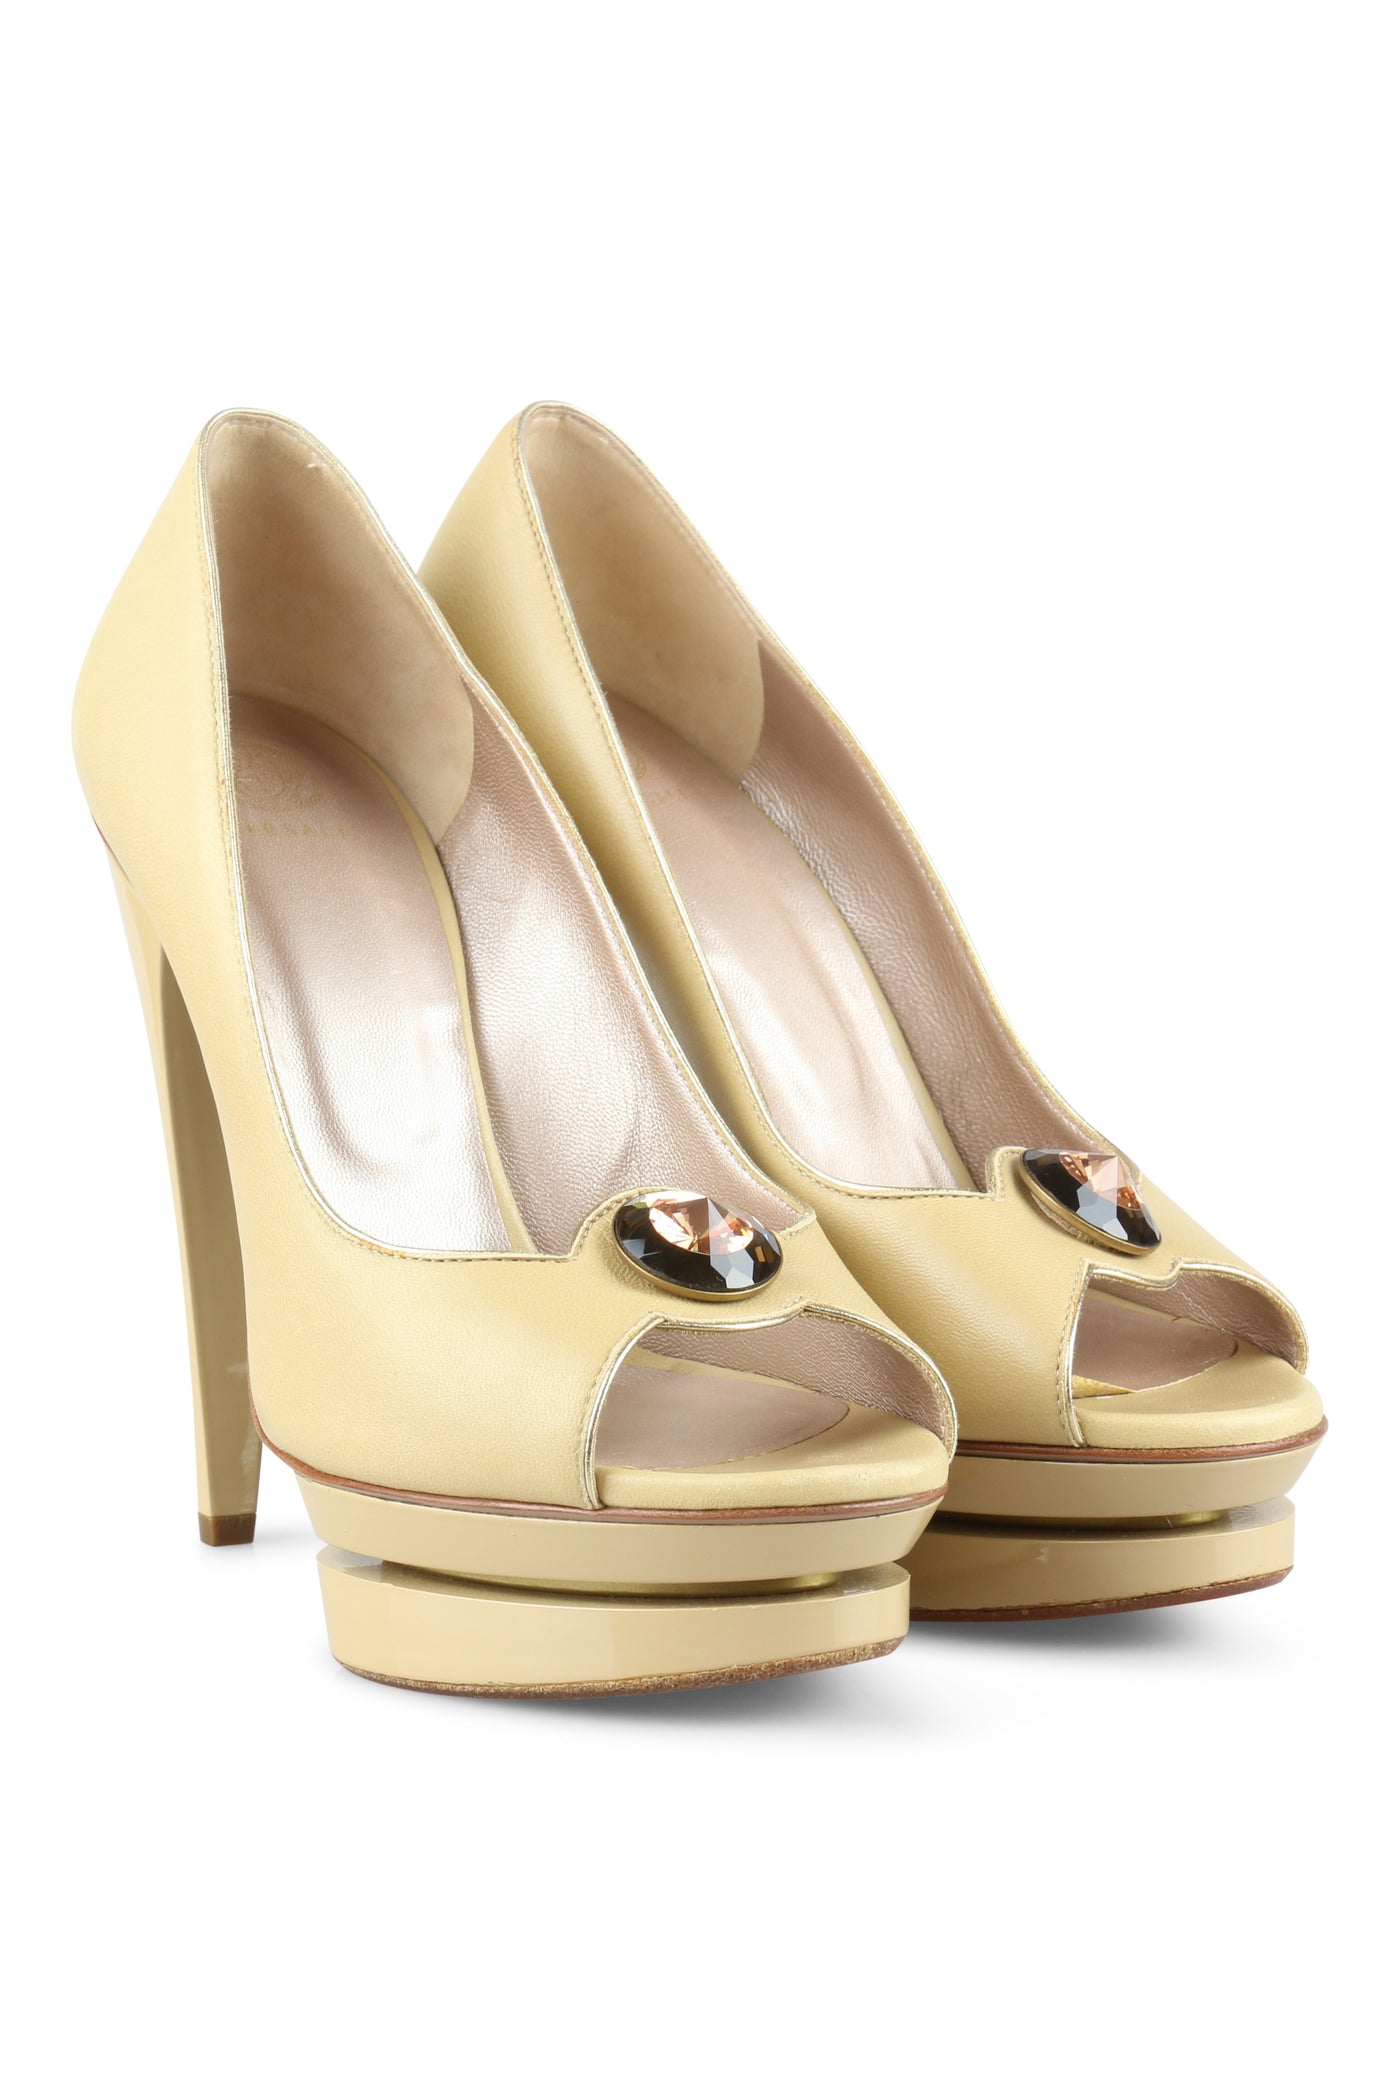 Bejewelled beige patent heels